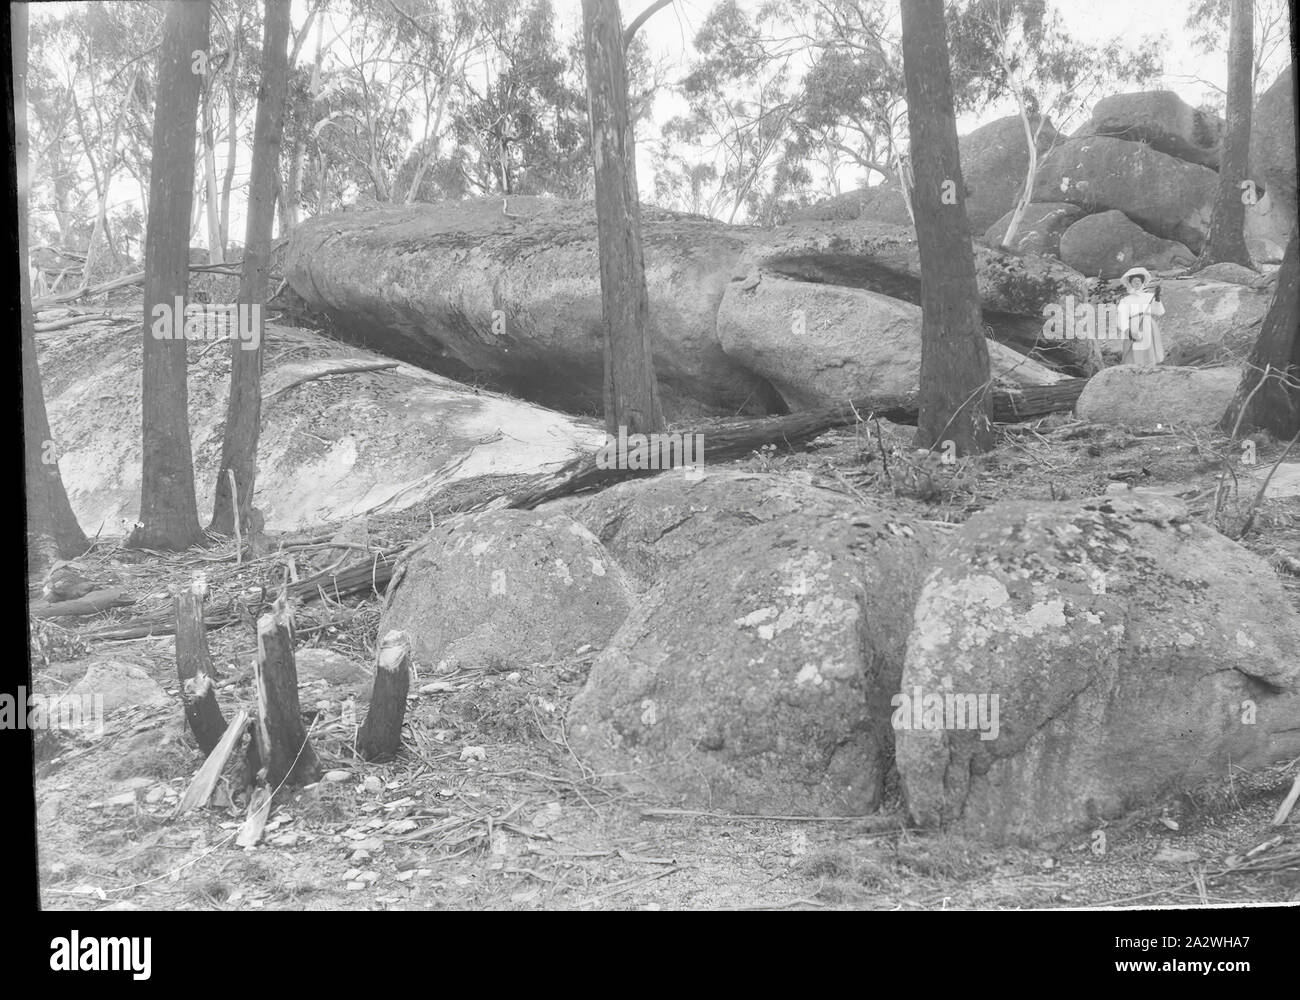 Lantern Slide - Massi, Victoria, circa 1900, immagine in bianco e nero di massi esposti in Victoria, fotografata da A.J. Campbell. Questo è uno dei molti lanterna in vetro le diapositive che formano la A.J. Campbell Collezione detenute da musei Victoria Foto Stock